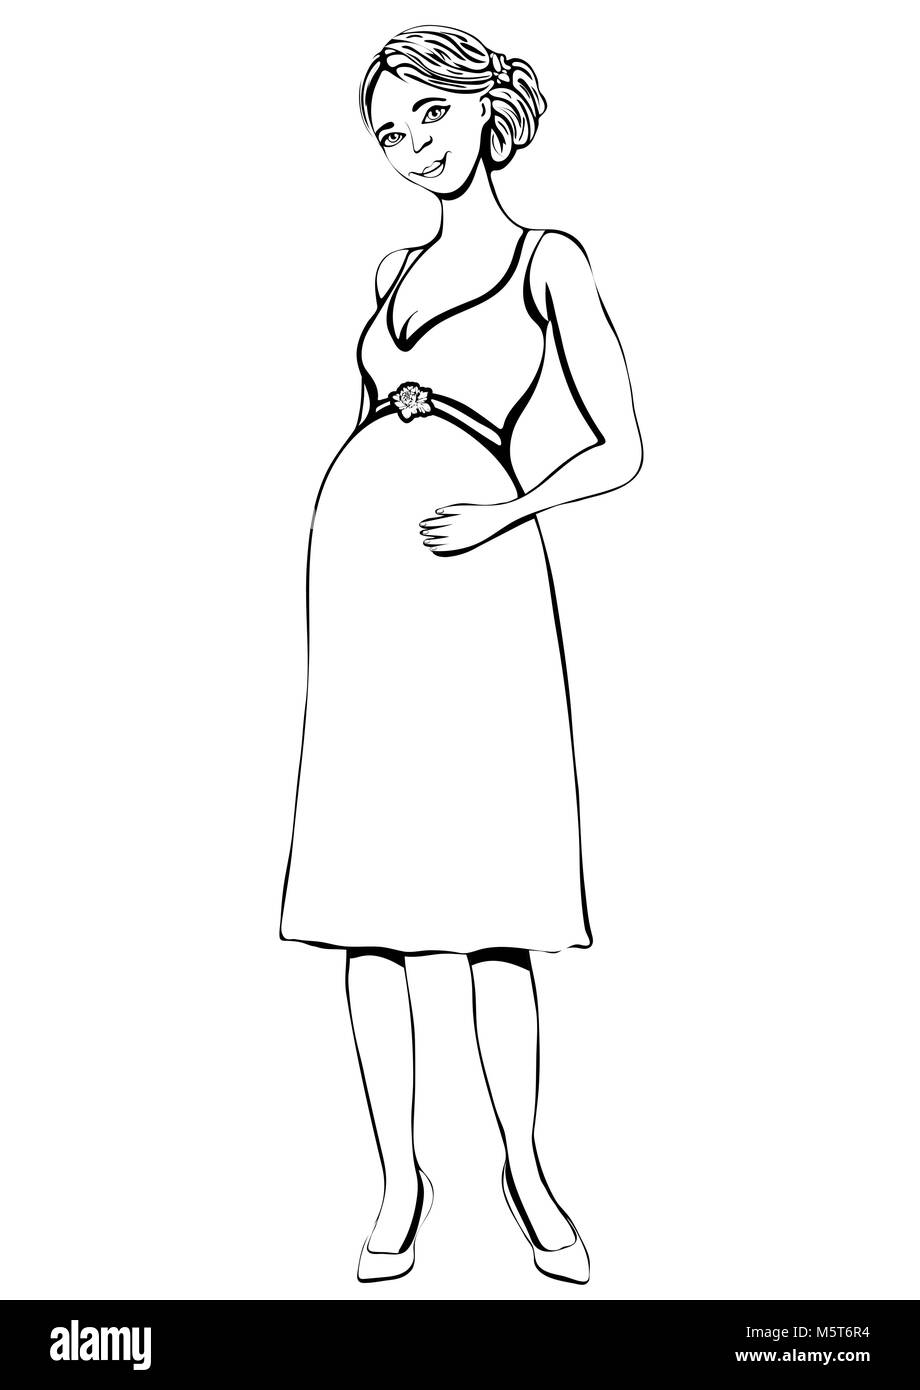 Schwangere Frau, Vektor outline Hand zeichnen, malen, skizzieren. Schwarz-weiß-Porträt von schwangeren Mädchen mit grossen Bauch voller länge gezeichnet Zukunft Mot Stock Vektor